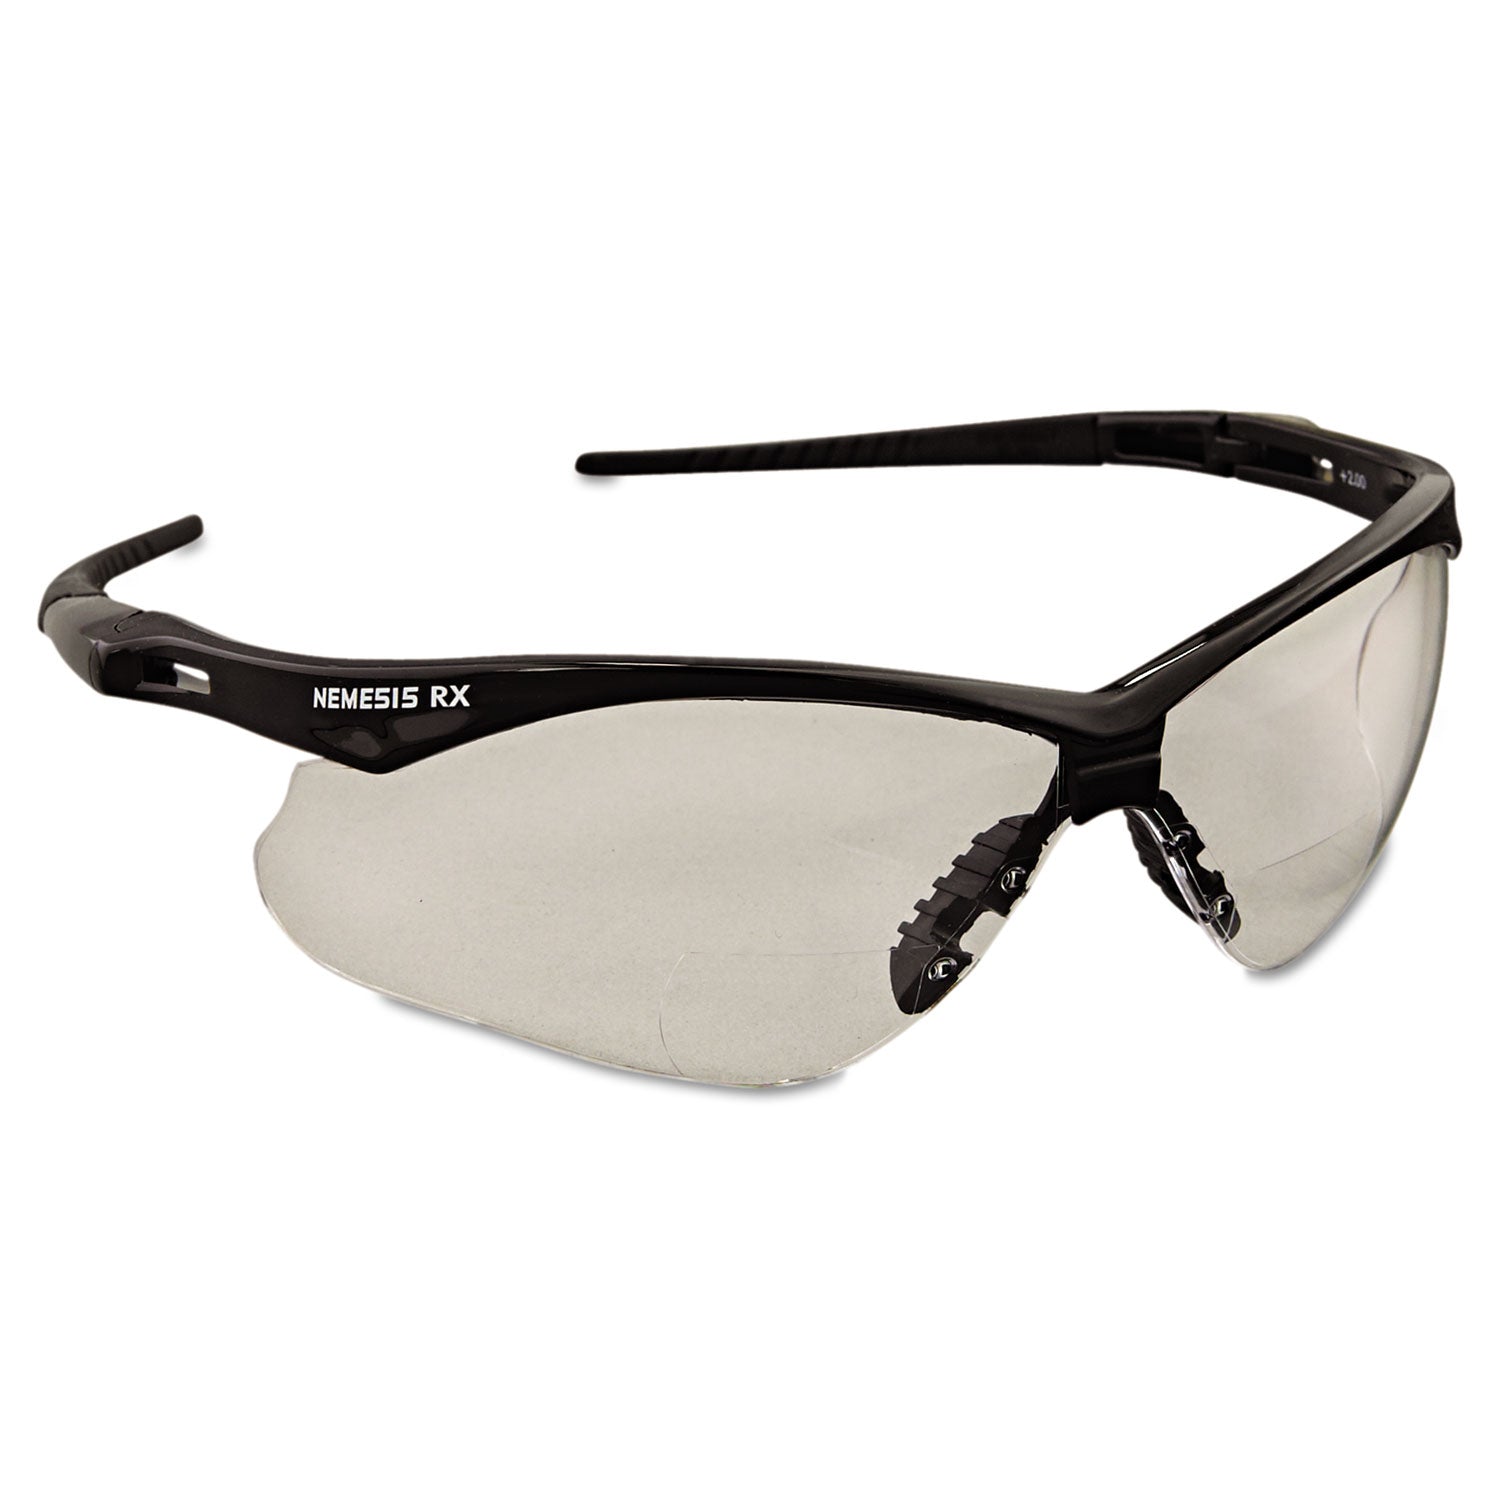 v60-nemesis-rx-reader-safety-glasses-black-frame-clear-lens-+20-diopter-strength_kcc28624 - 2